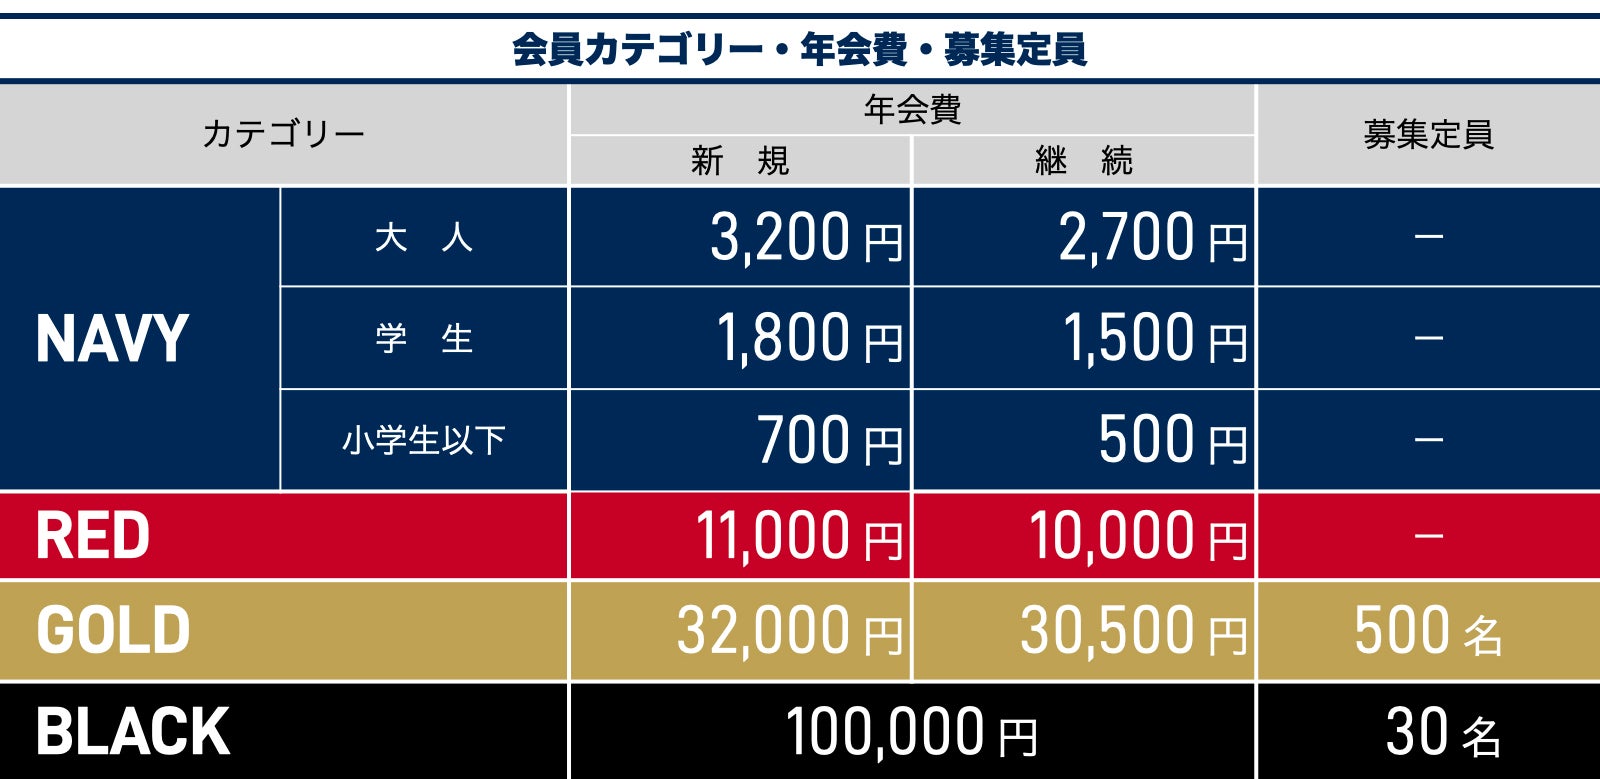 横浜ビー・コルセアーズオフィシャルファンクラブ2020-21シーズン_カテゴリー